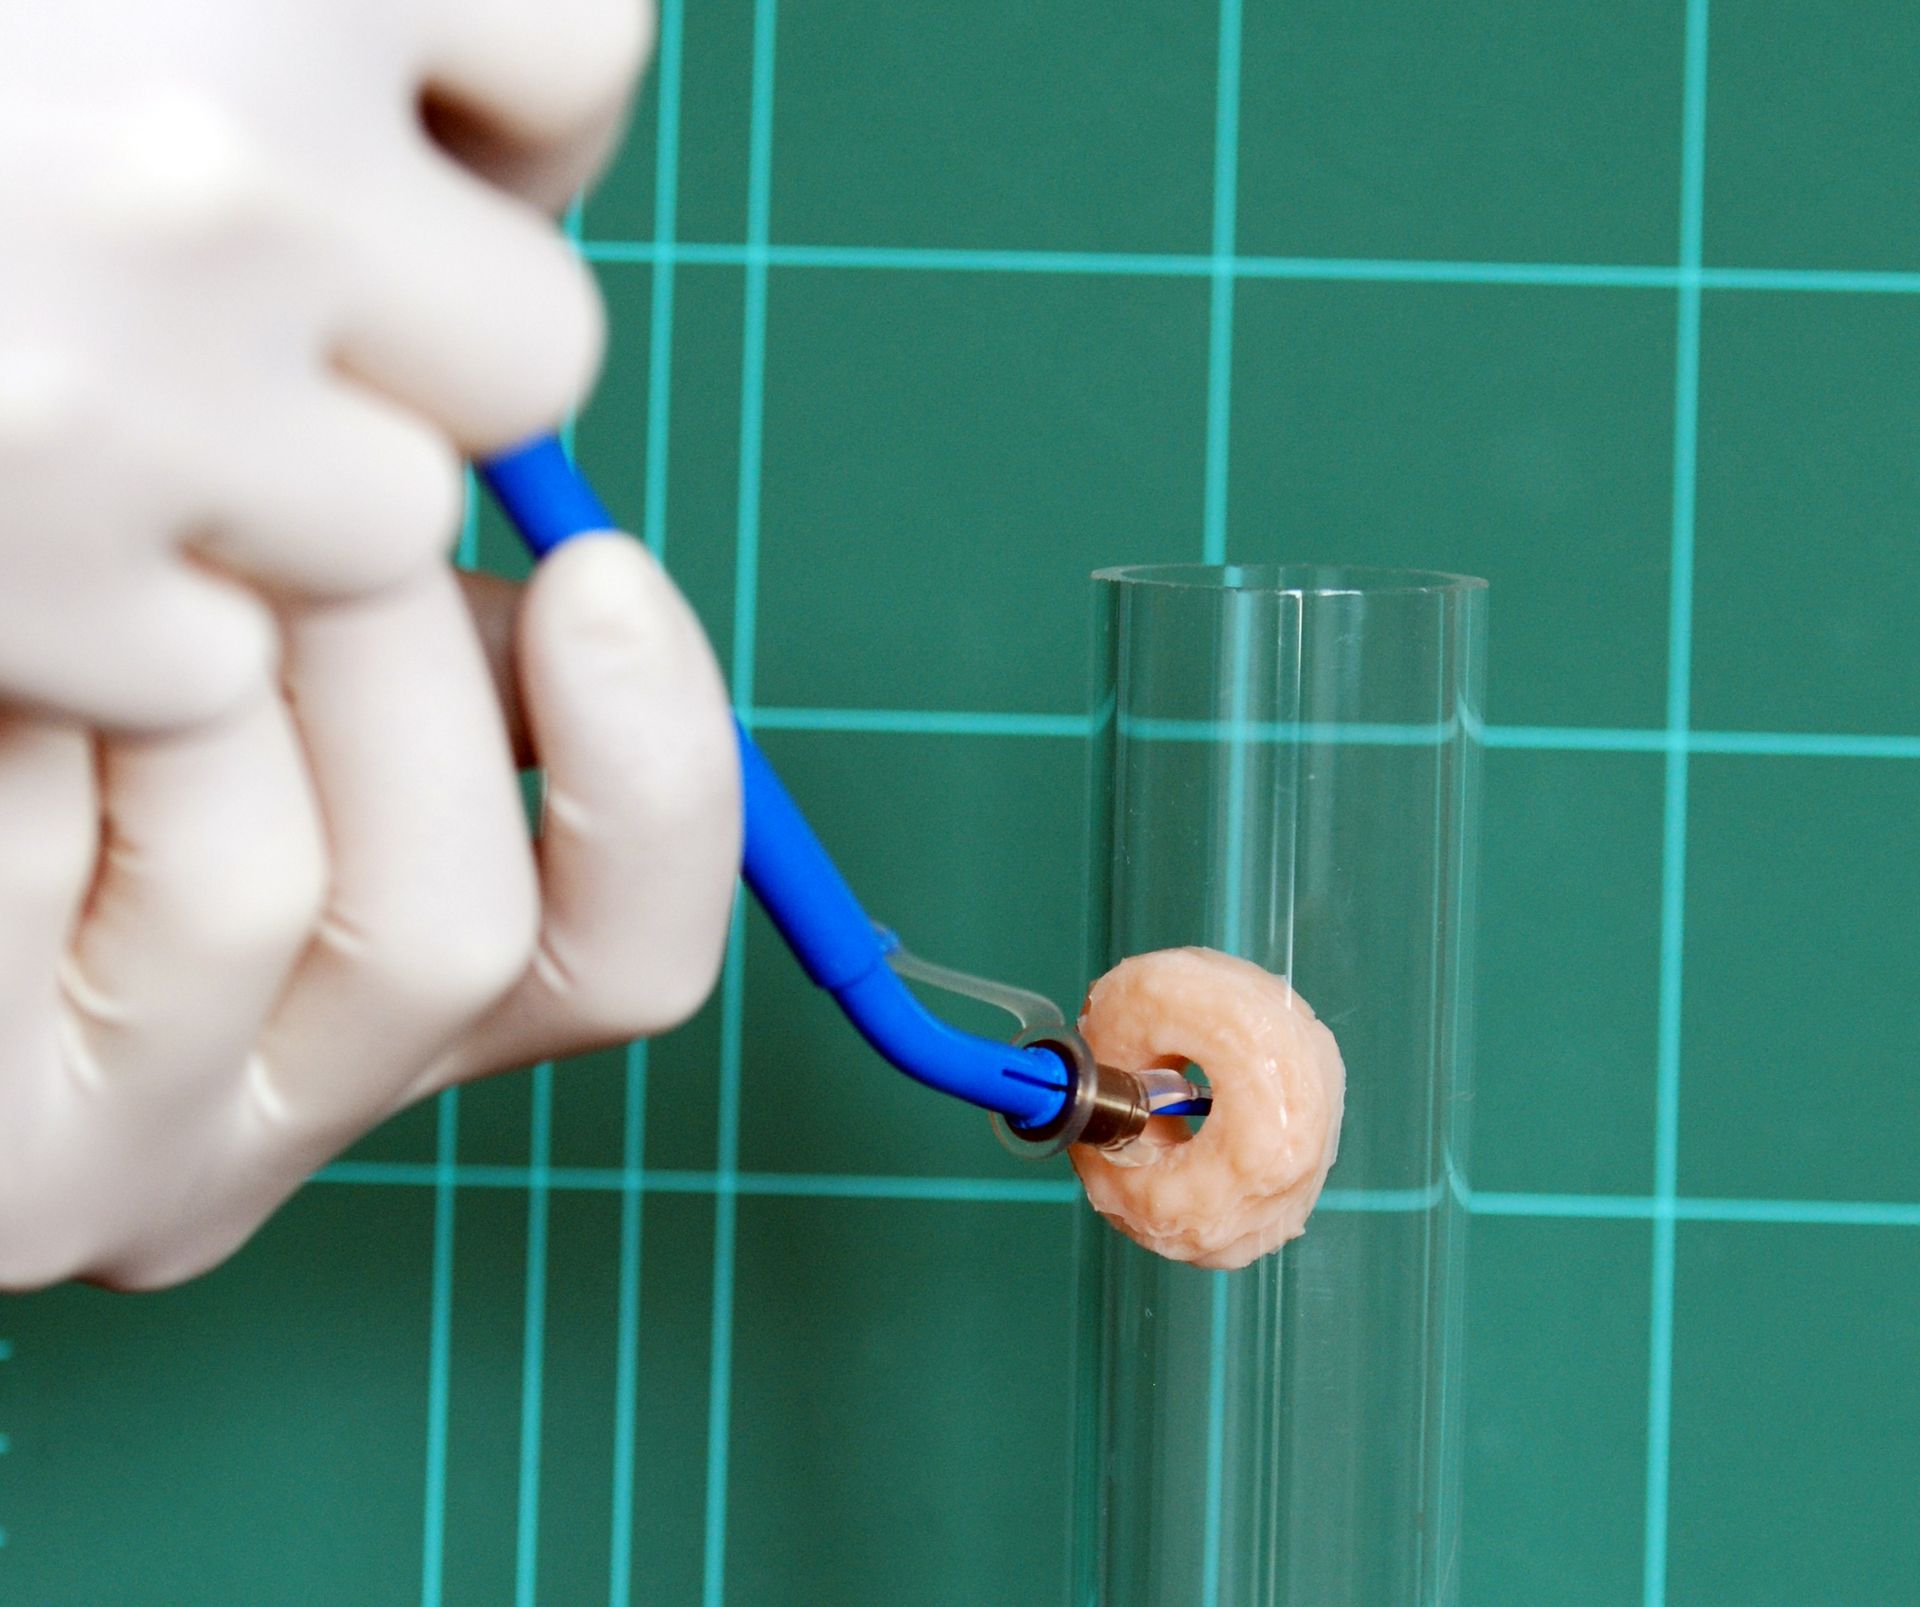 Nun wird die Prothese anterograd in den Shunt eingeführt bis nur noch der tracheale Flansch sichtbar ist.